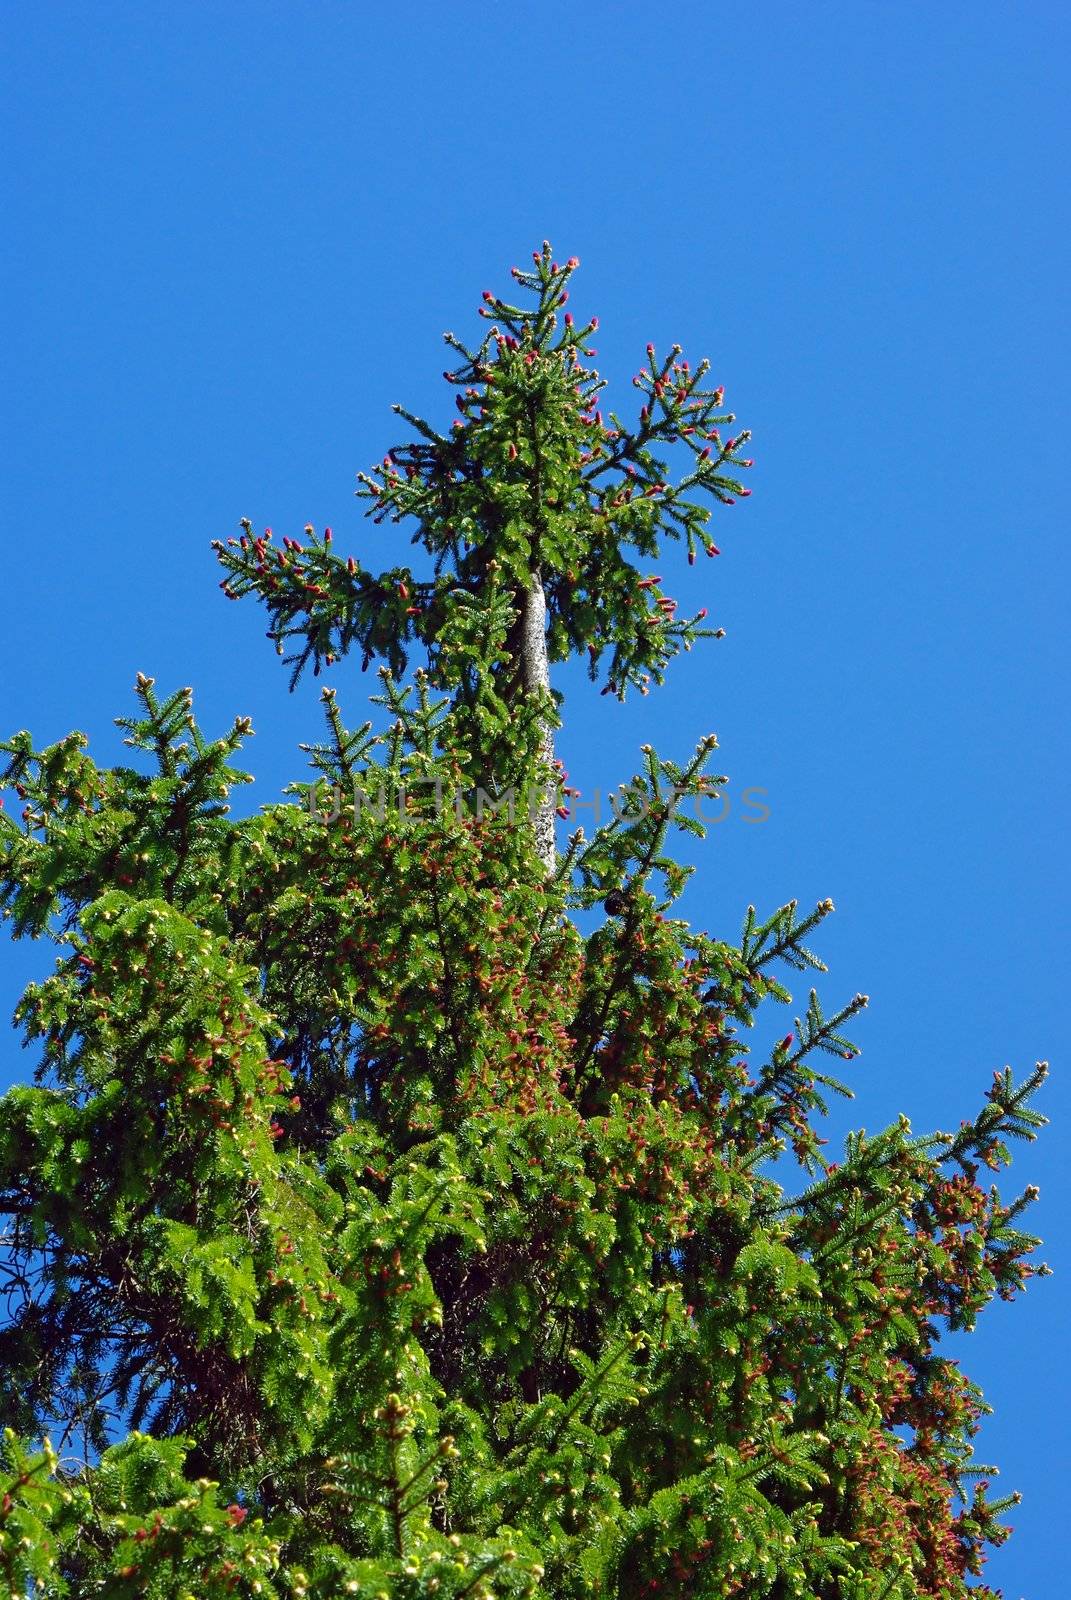 Old bald spruce against blue sky background